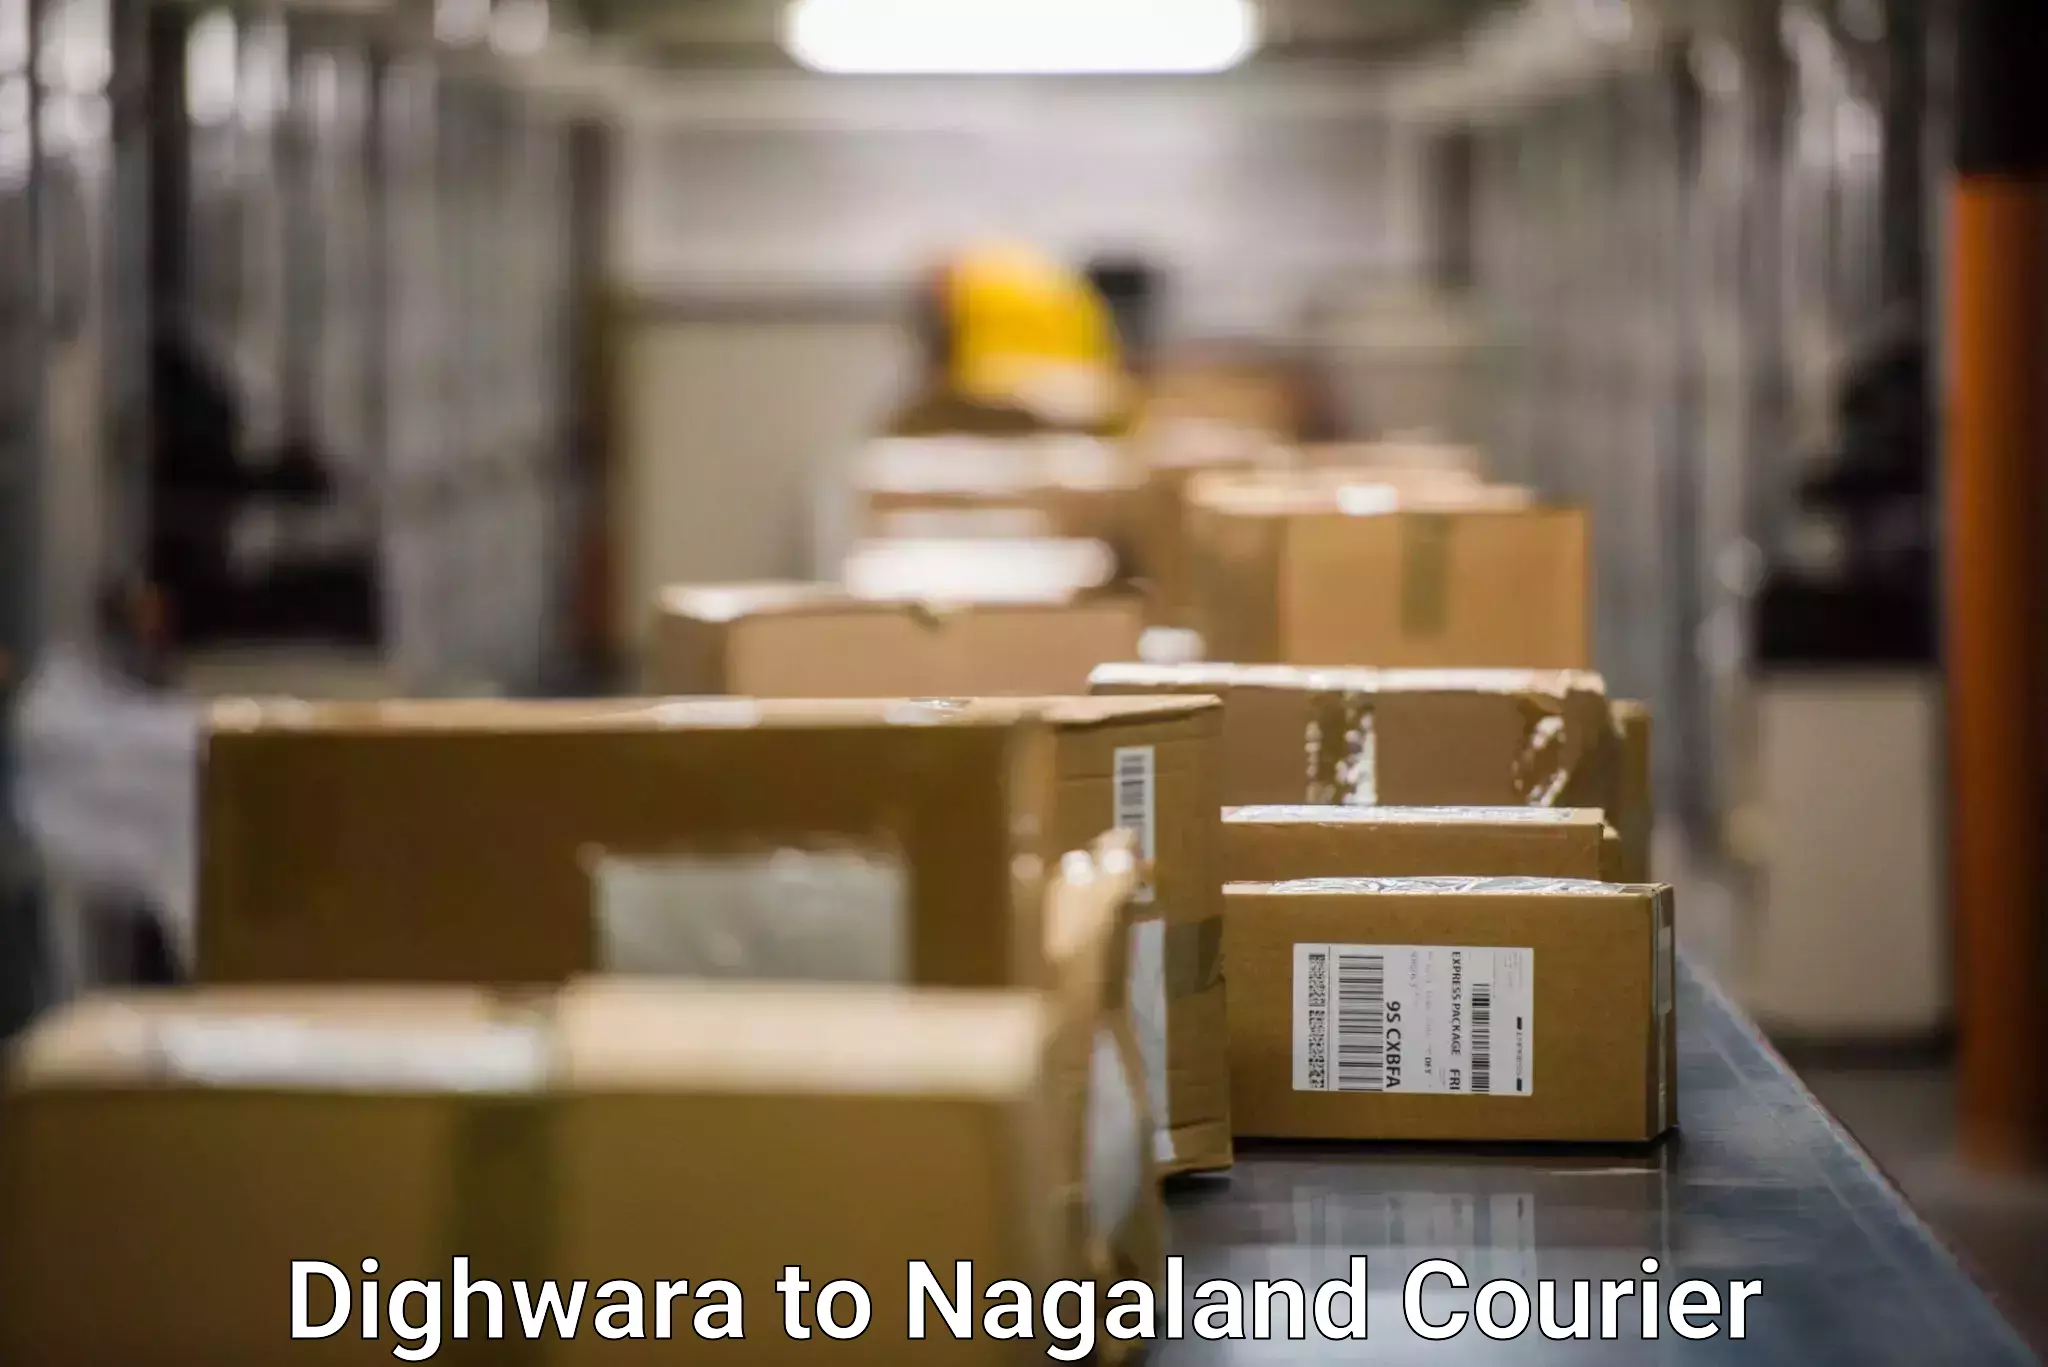 Parcel service for businesses Dighwara to NIT Nagaland